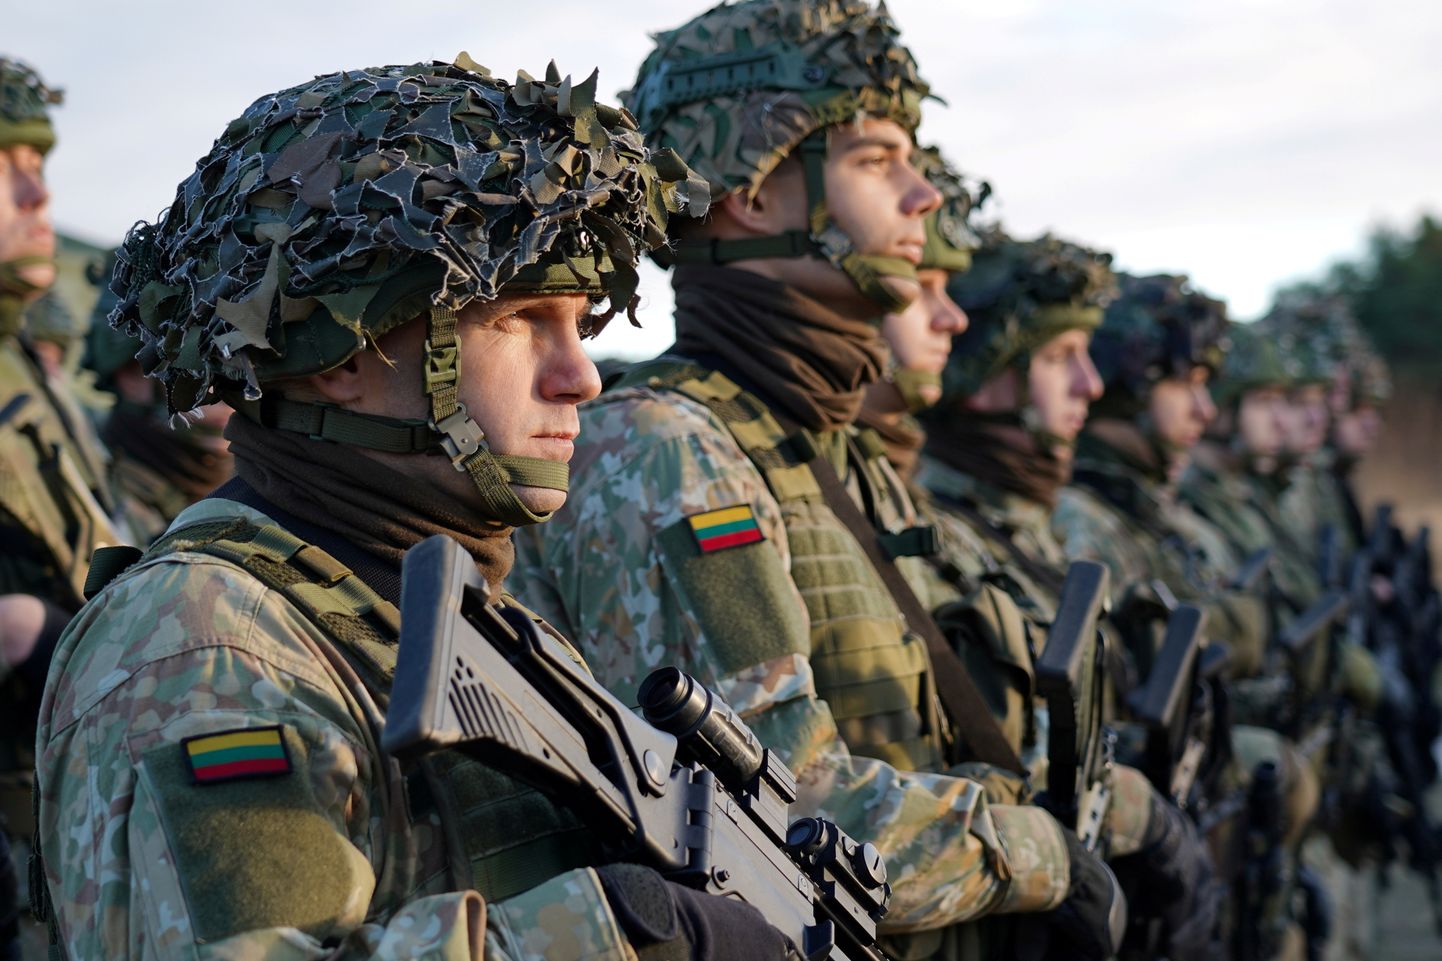 Leedu sõjavägi 22. novembril 2021